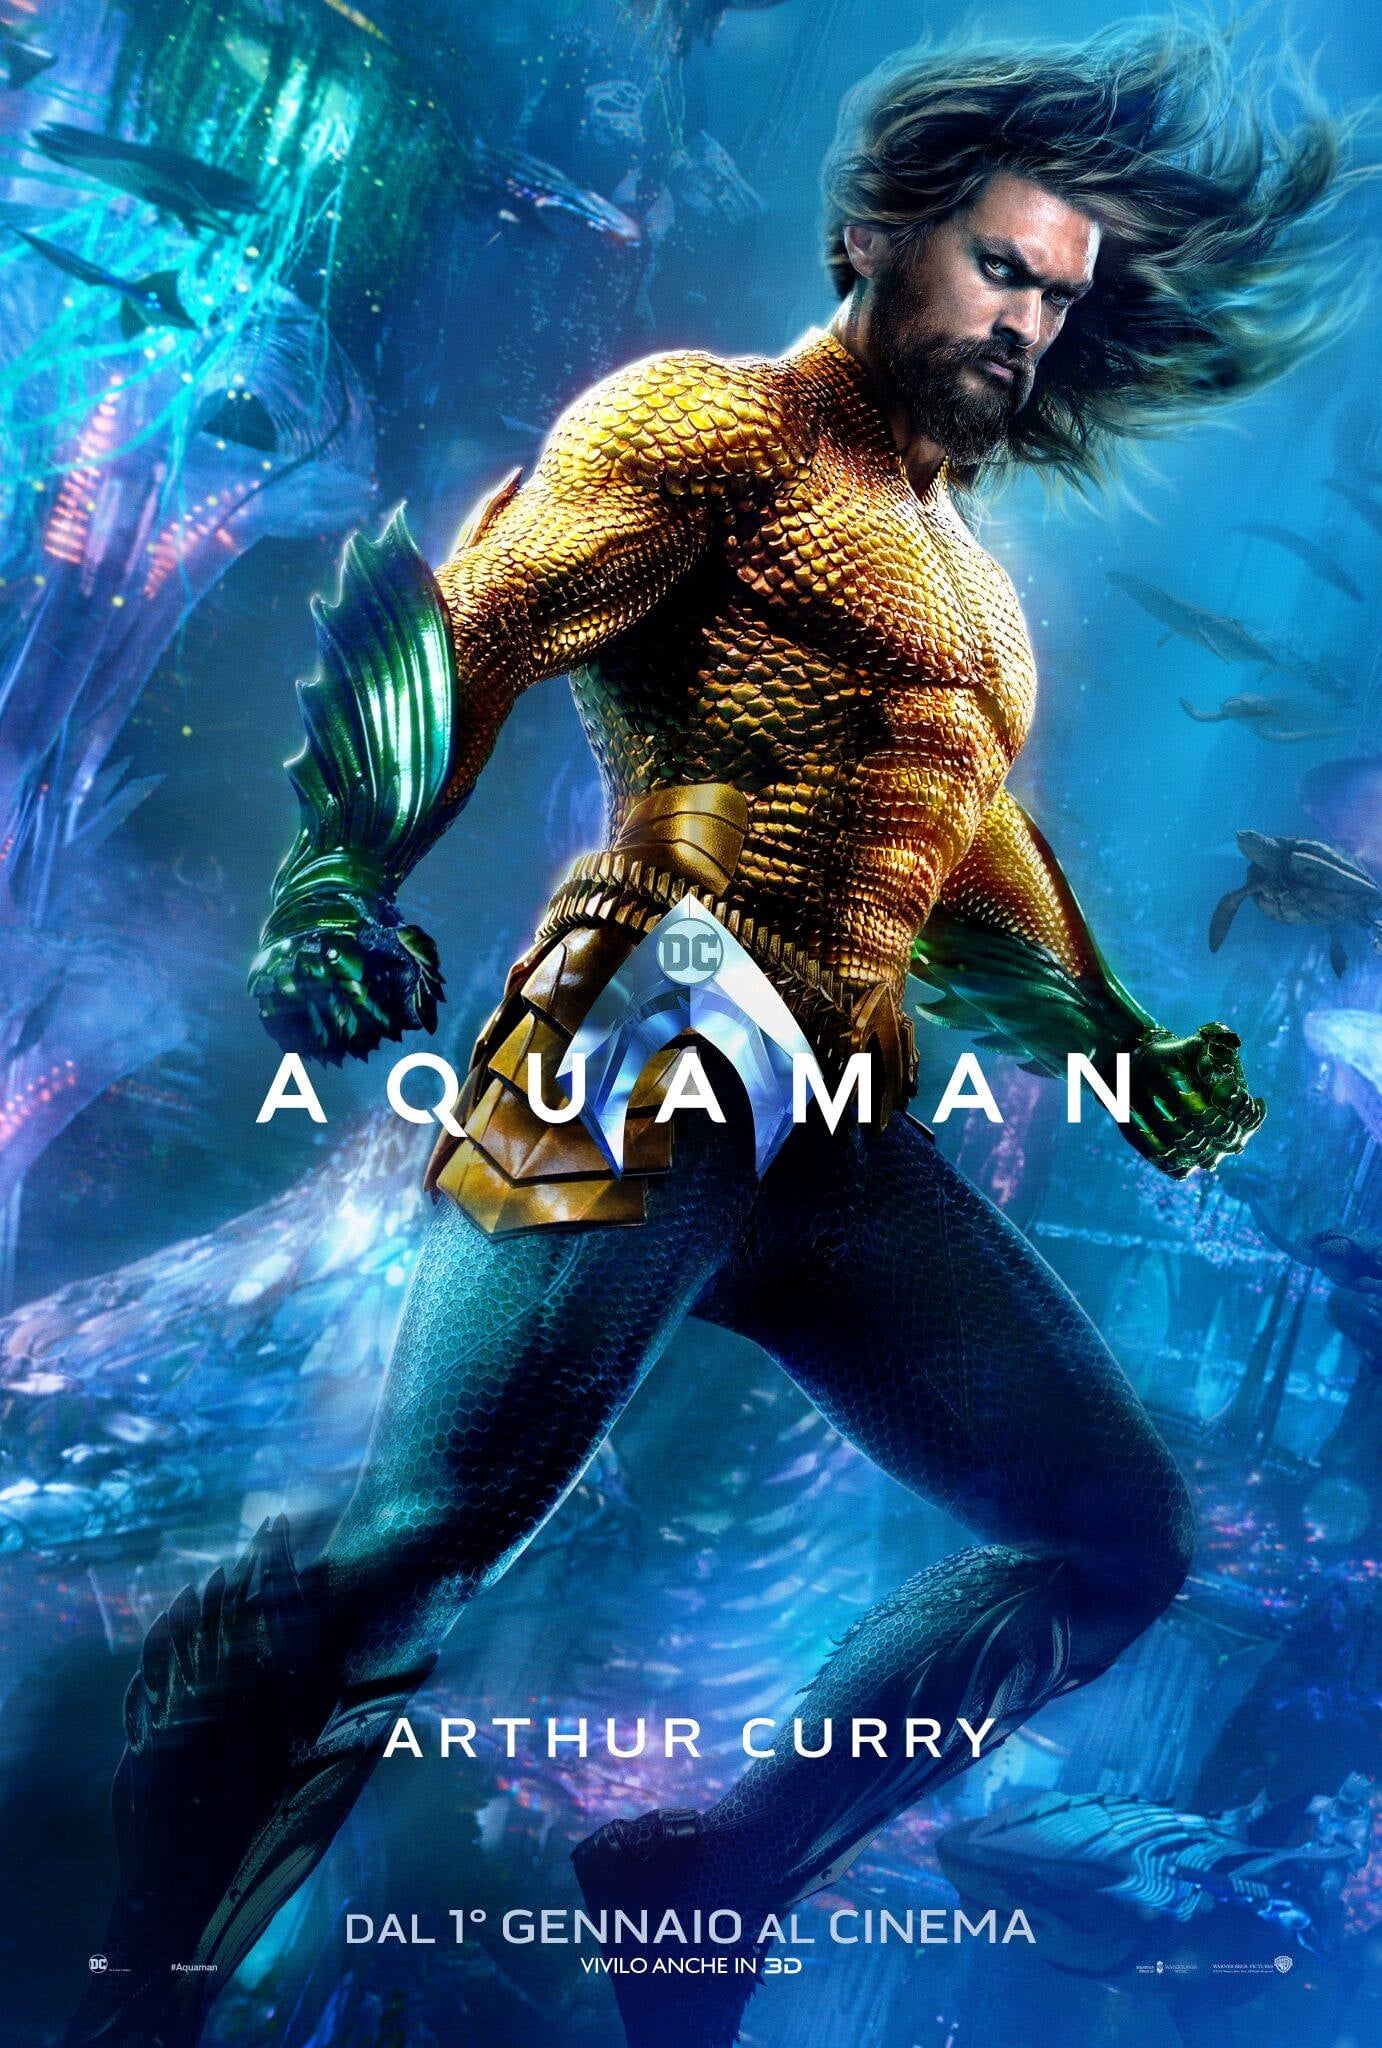 Poster de la película "Aquaman"